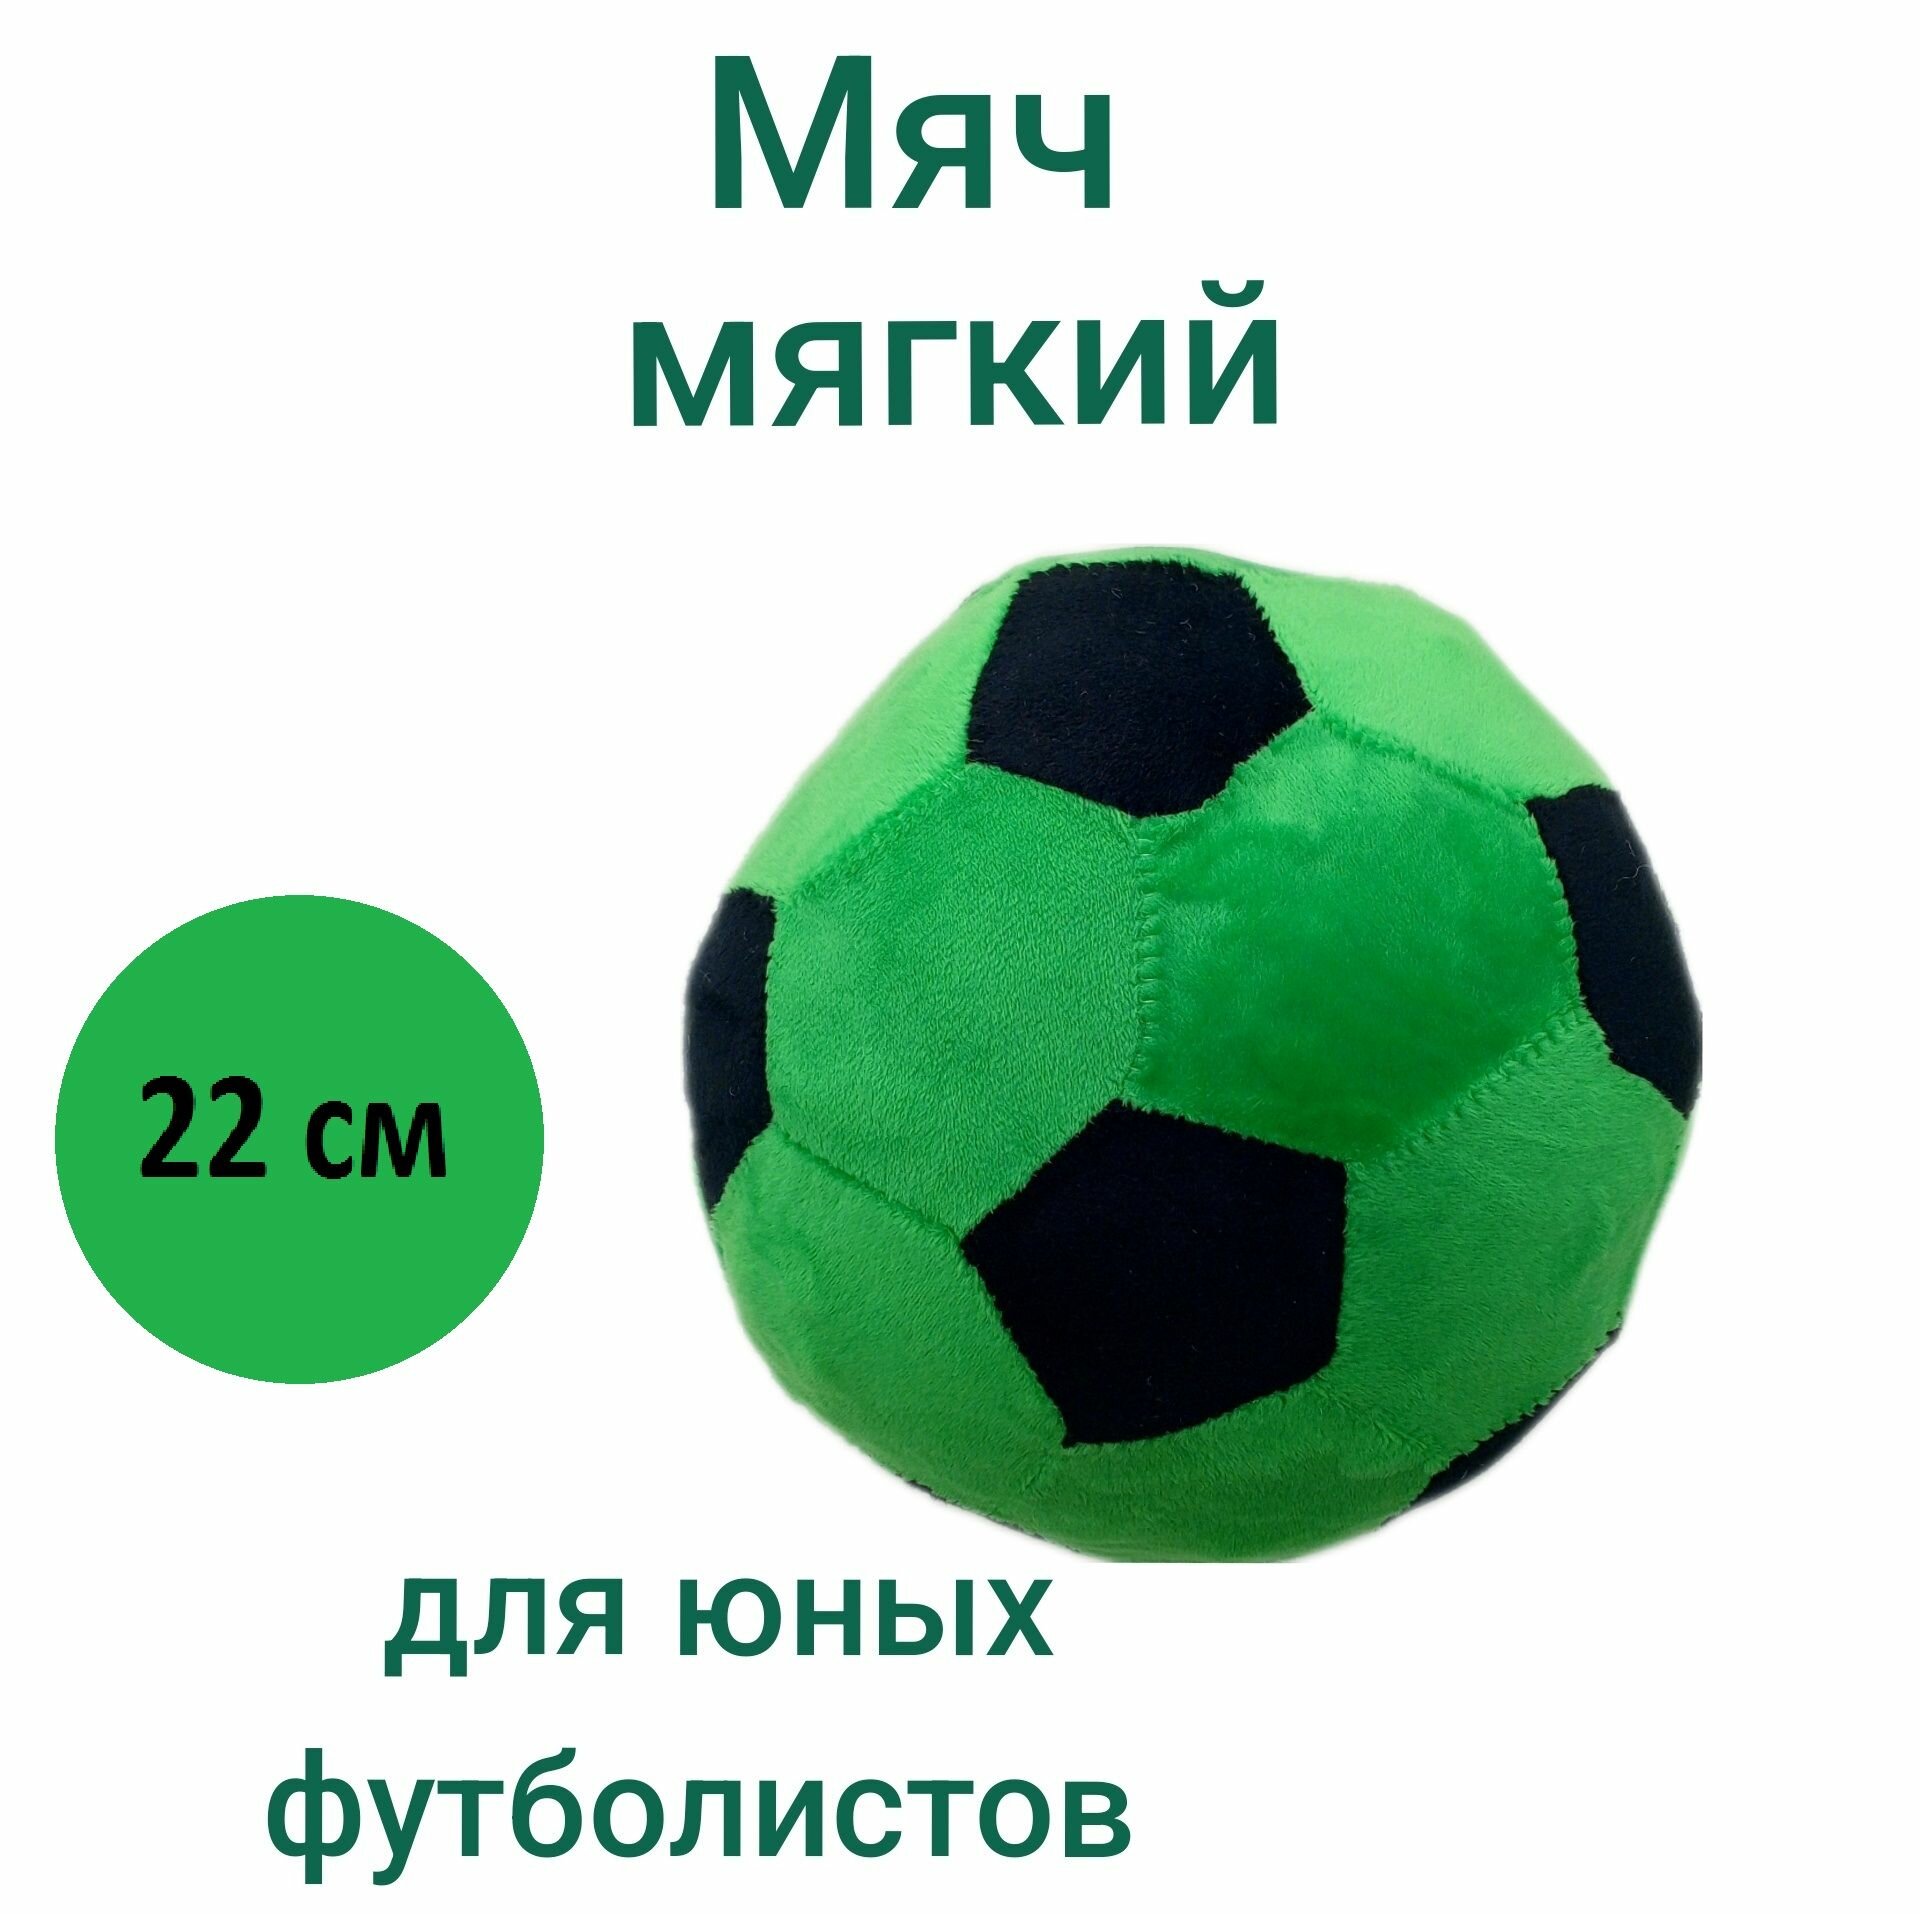 Мягкая игрушка Мяч плюшевый цвет черно-зеленый, диаметр 22 см.